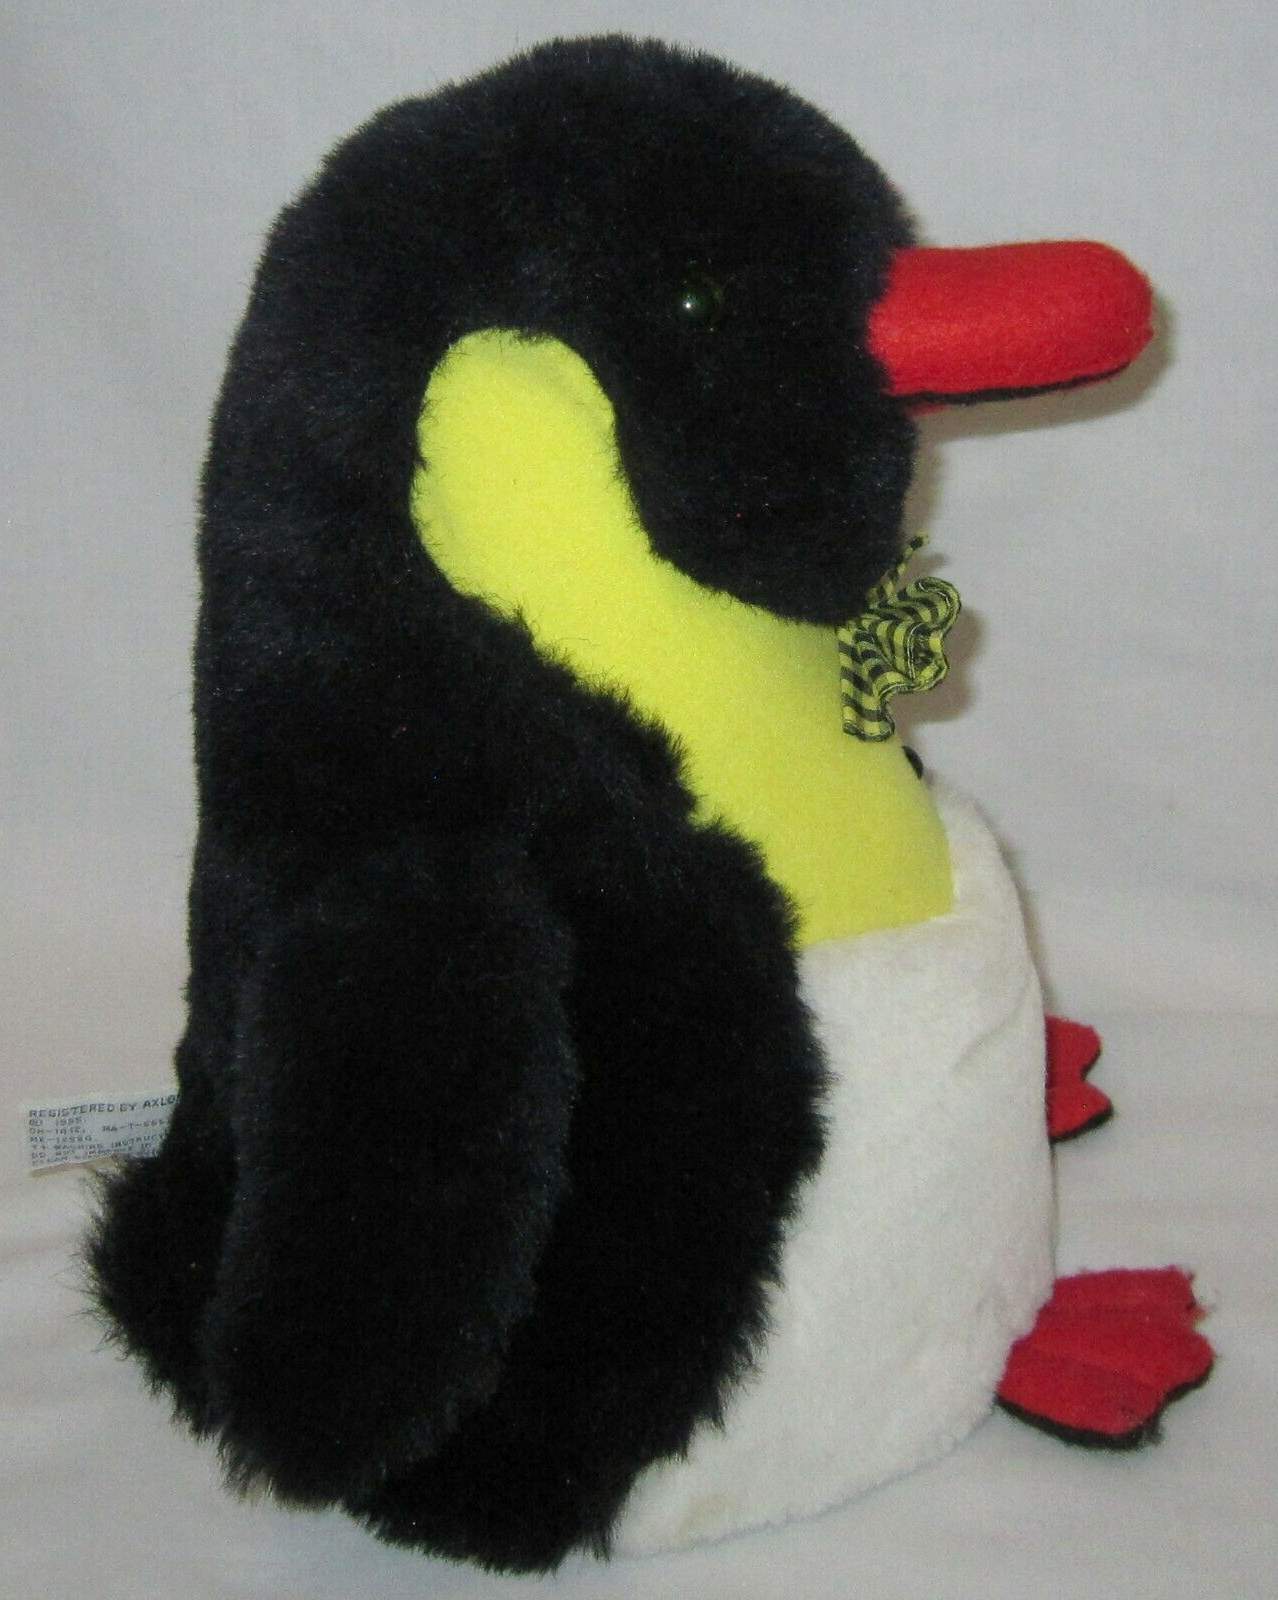 Axlon Penguin Robot